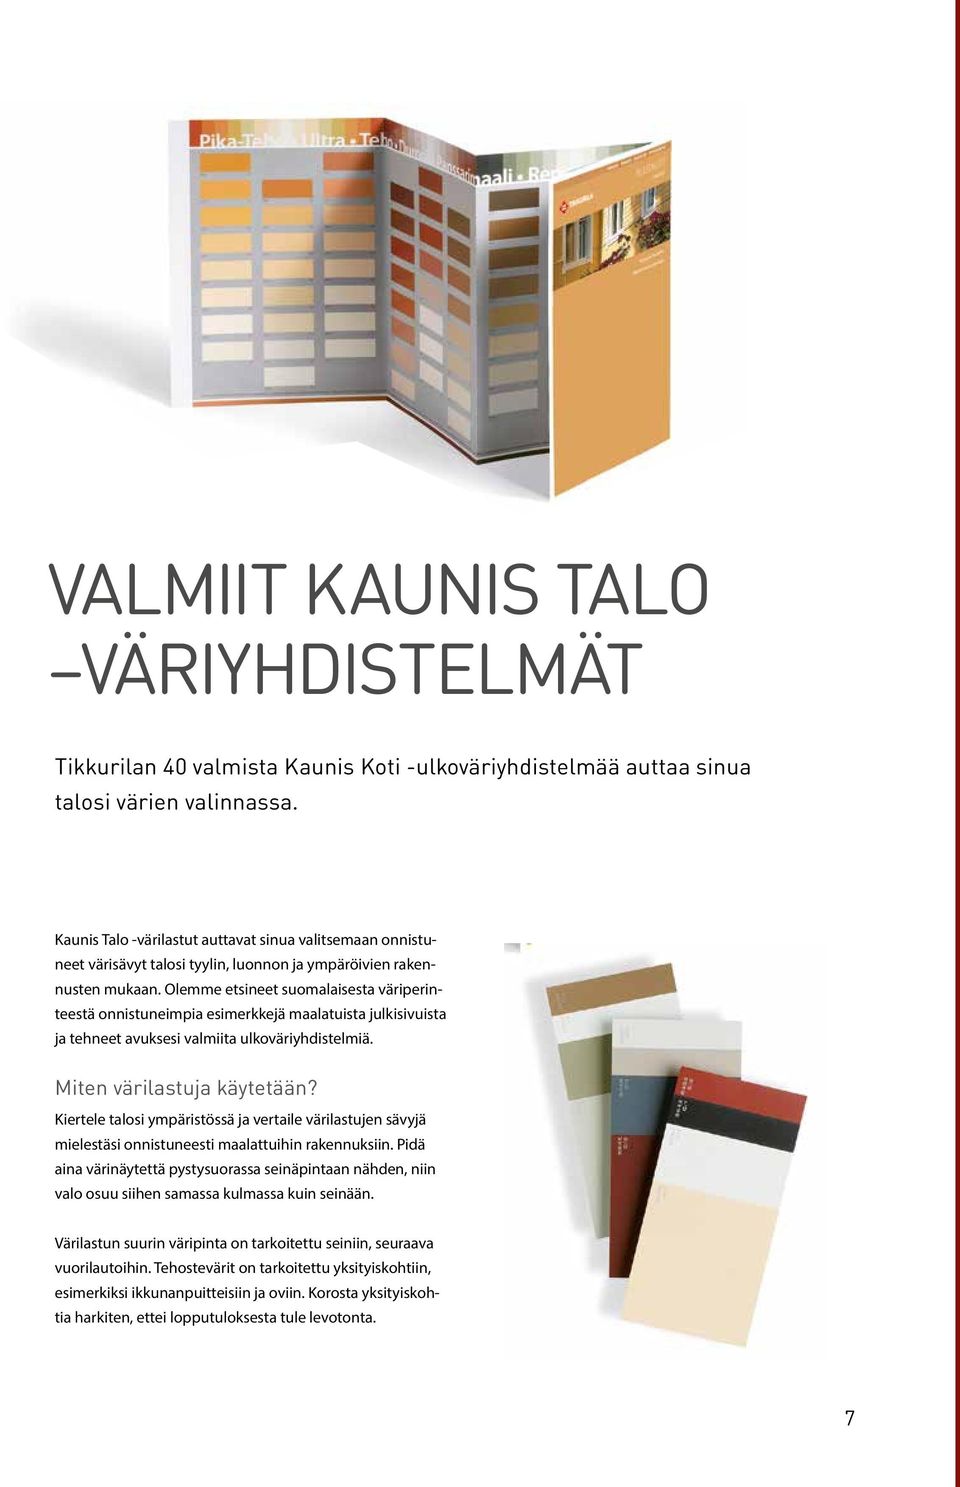 Olemme etsineet suomalaisesta väriperinteestä onnistuneimpia esimerkkejä maalatuista julkisivuista ja tehneet avuksesi valmiita ulkoväriyhdistelmiä. Miten värilastuja käytetään?